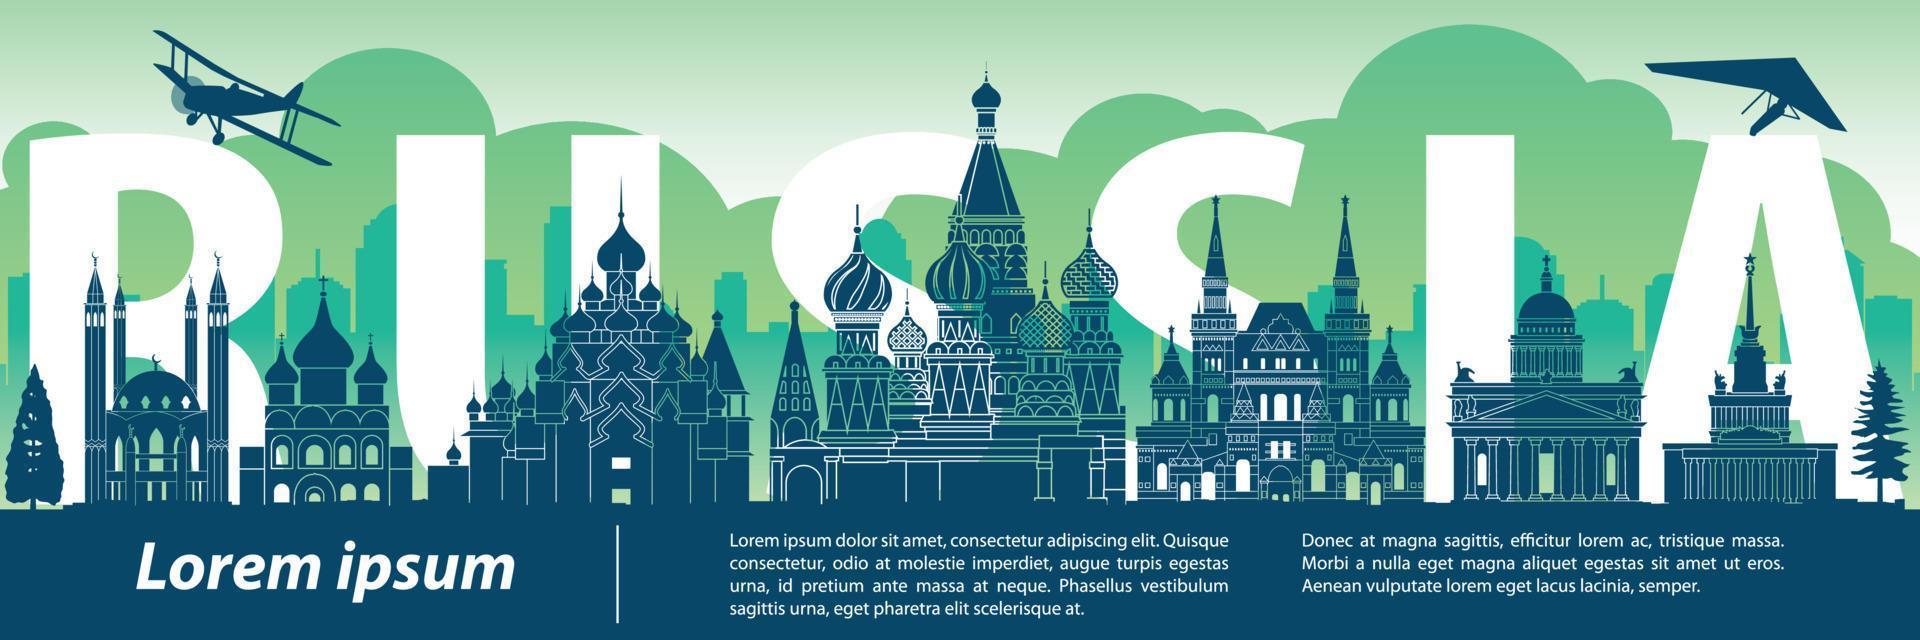 russia famoso punto di riferimento in stile silhouette, testo all'interno, viaggi e turismo, tema colore tonalità blu e verde vettore